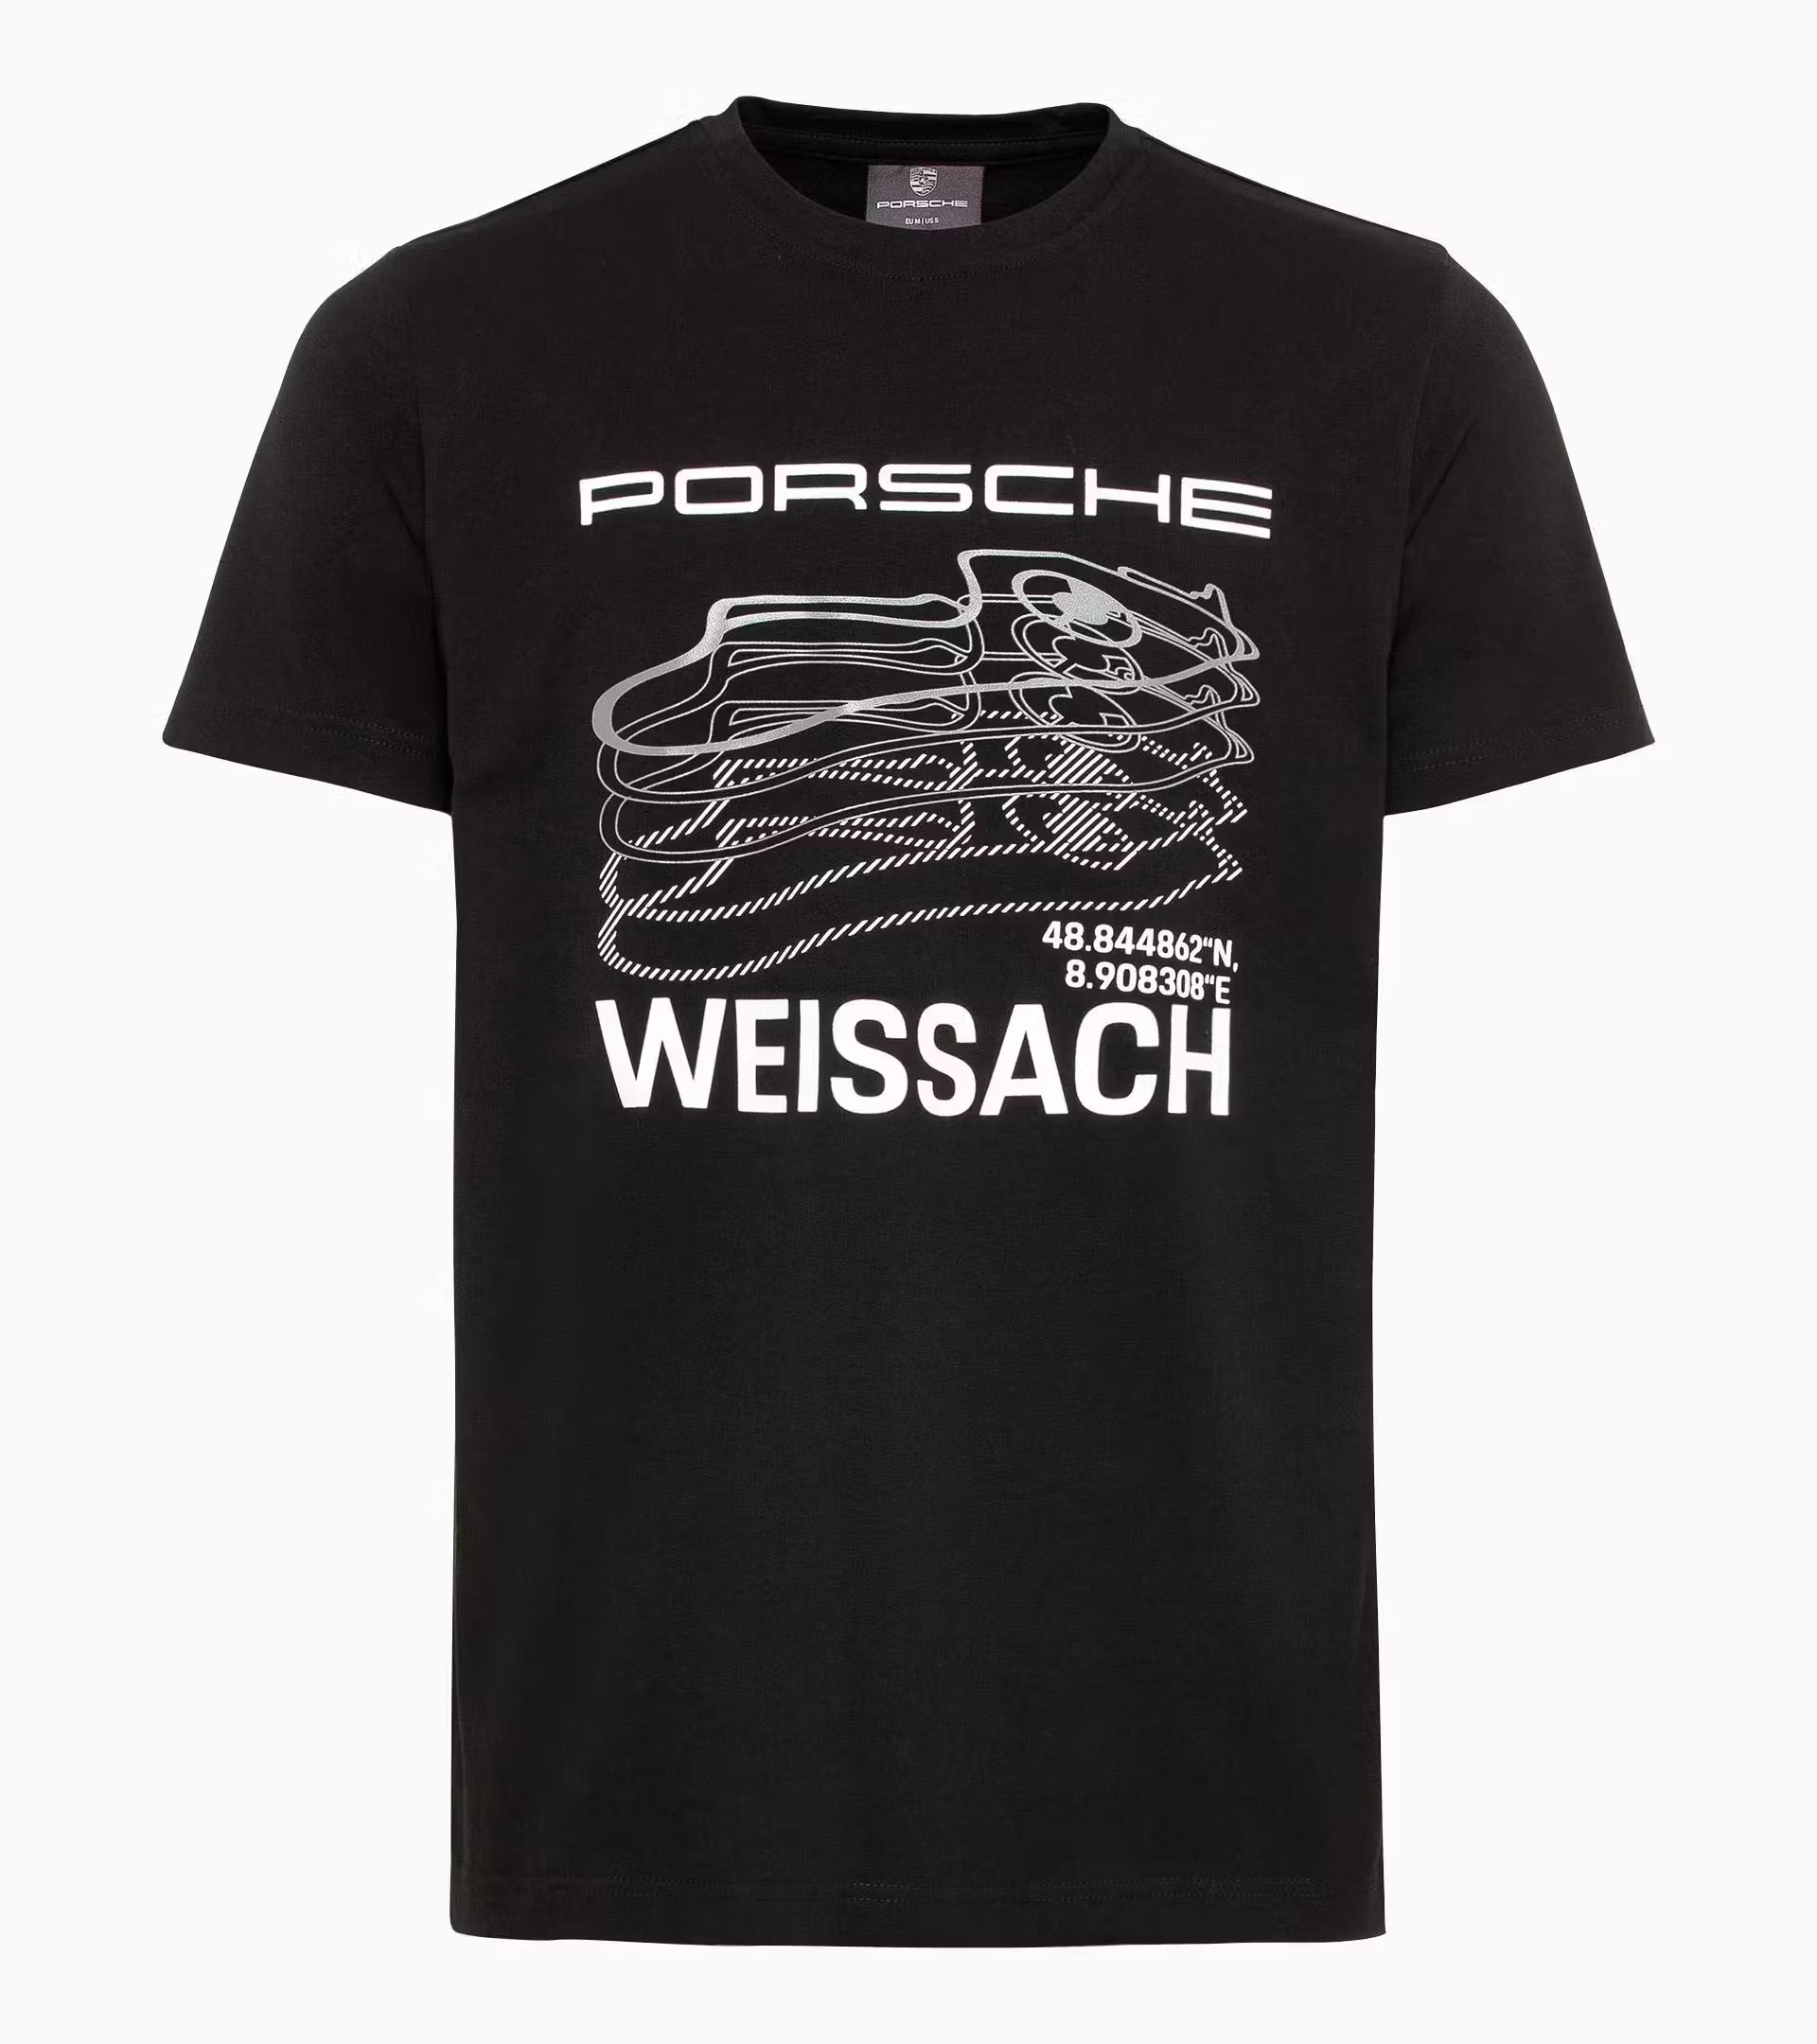 Porsche T-shirt – Essential